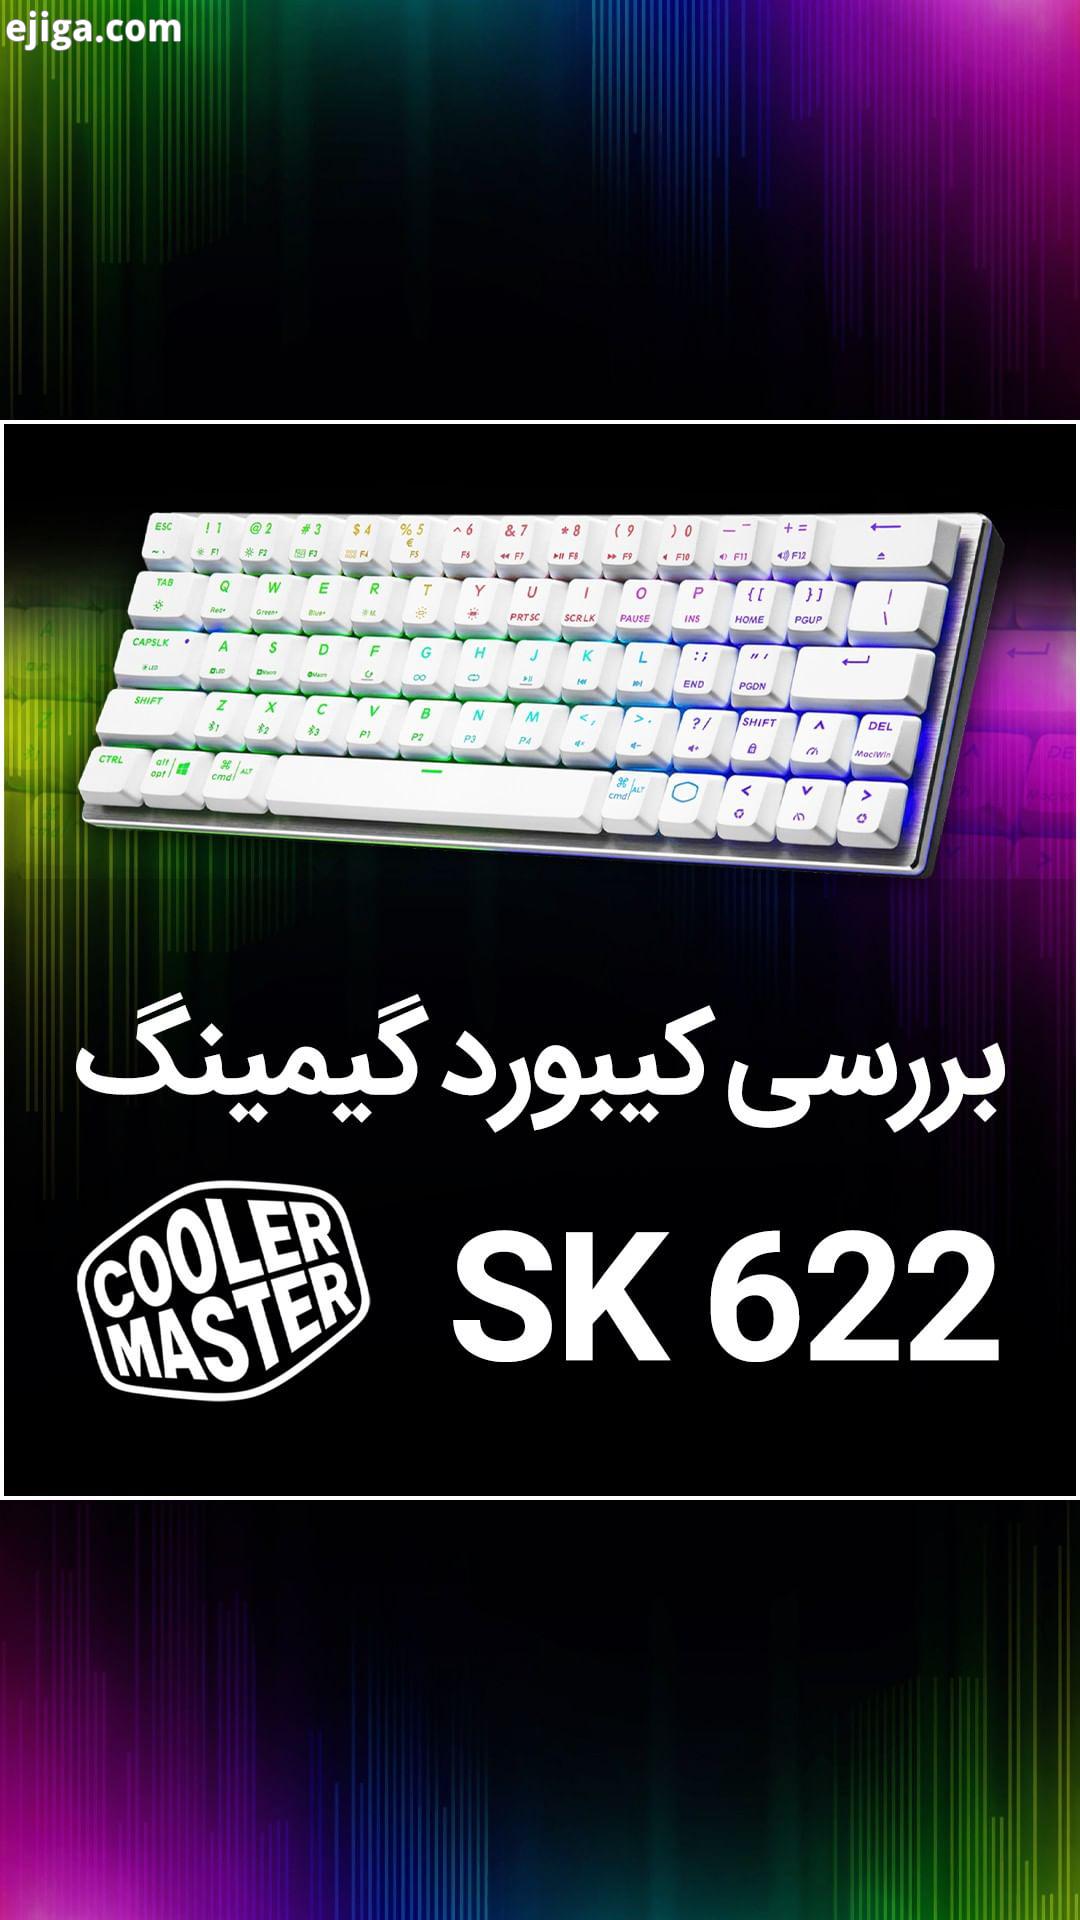 .?اگر دنبال یک کیبورد گیمینگ مکانیکی جمع وجور با قابلیت اتصال بلوتوث هستید، کولر مستر SK622 برای شما